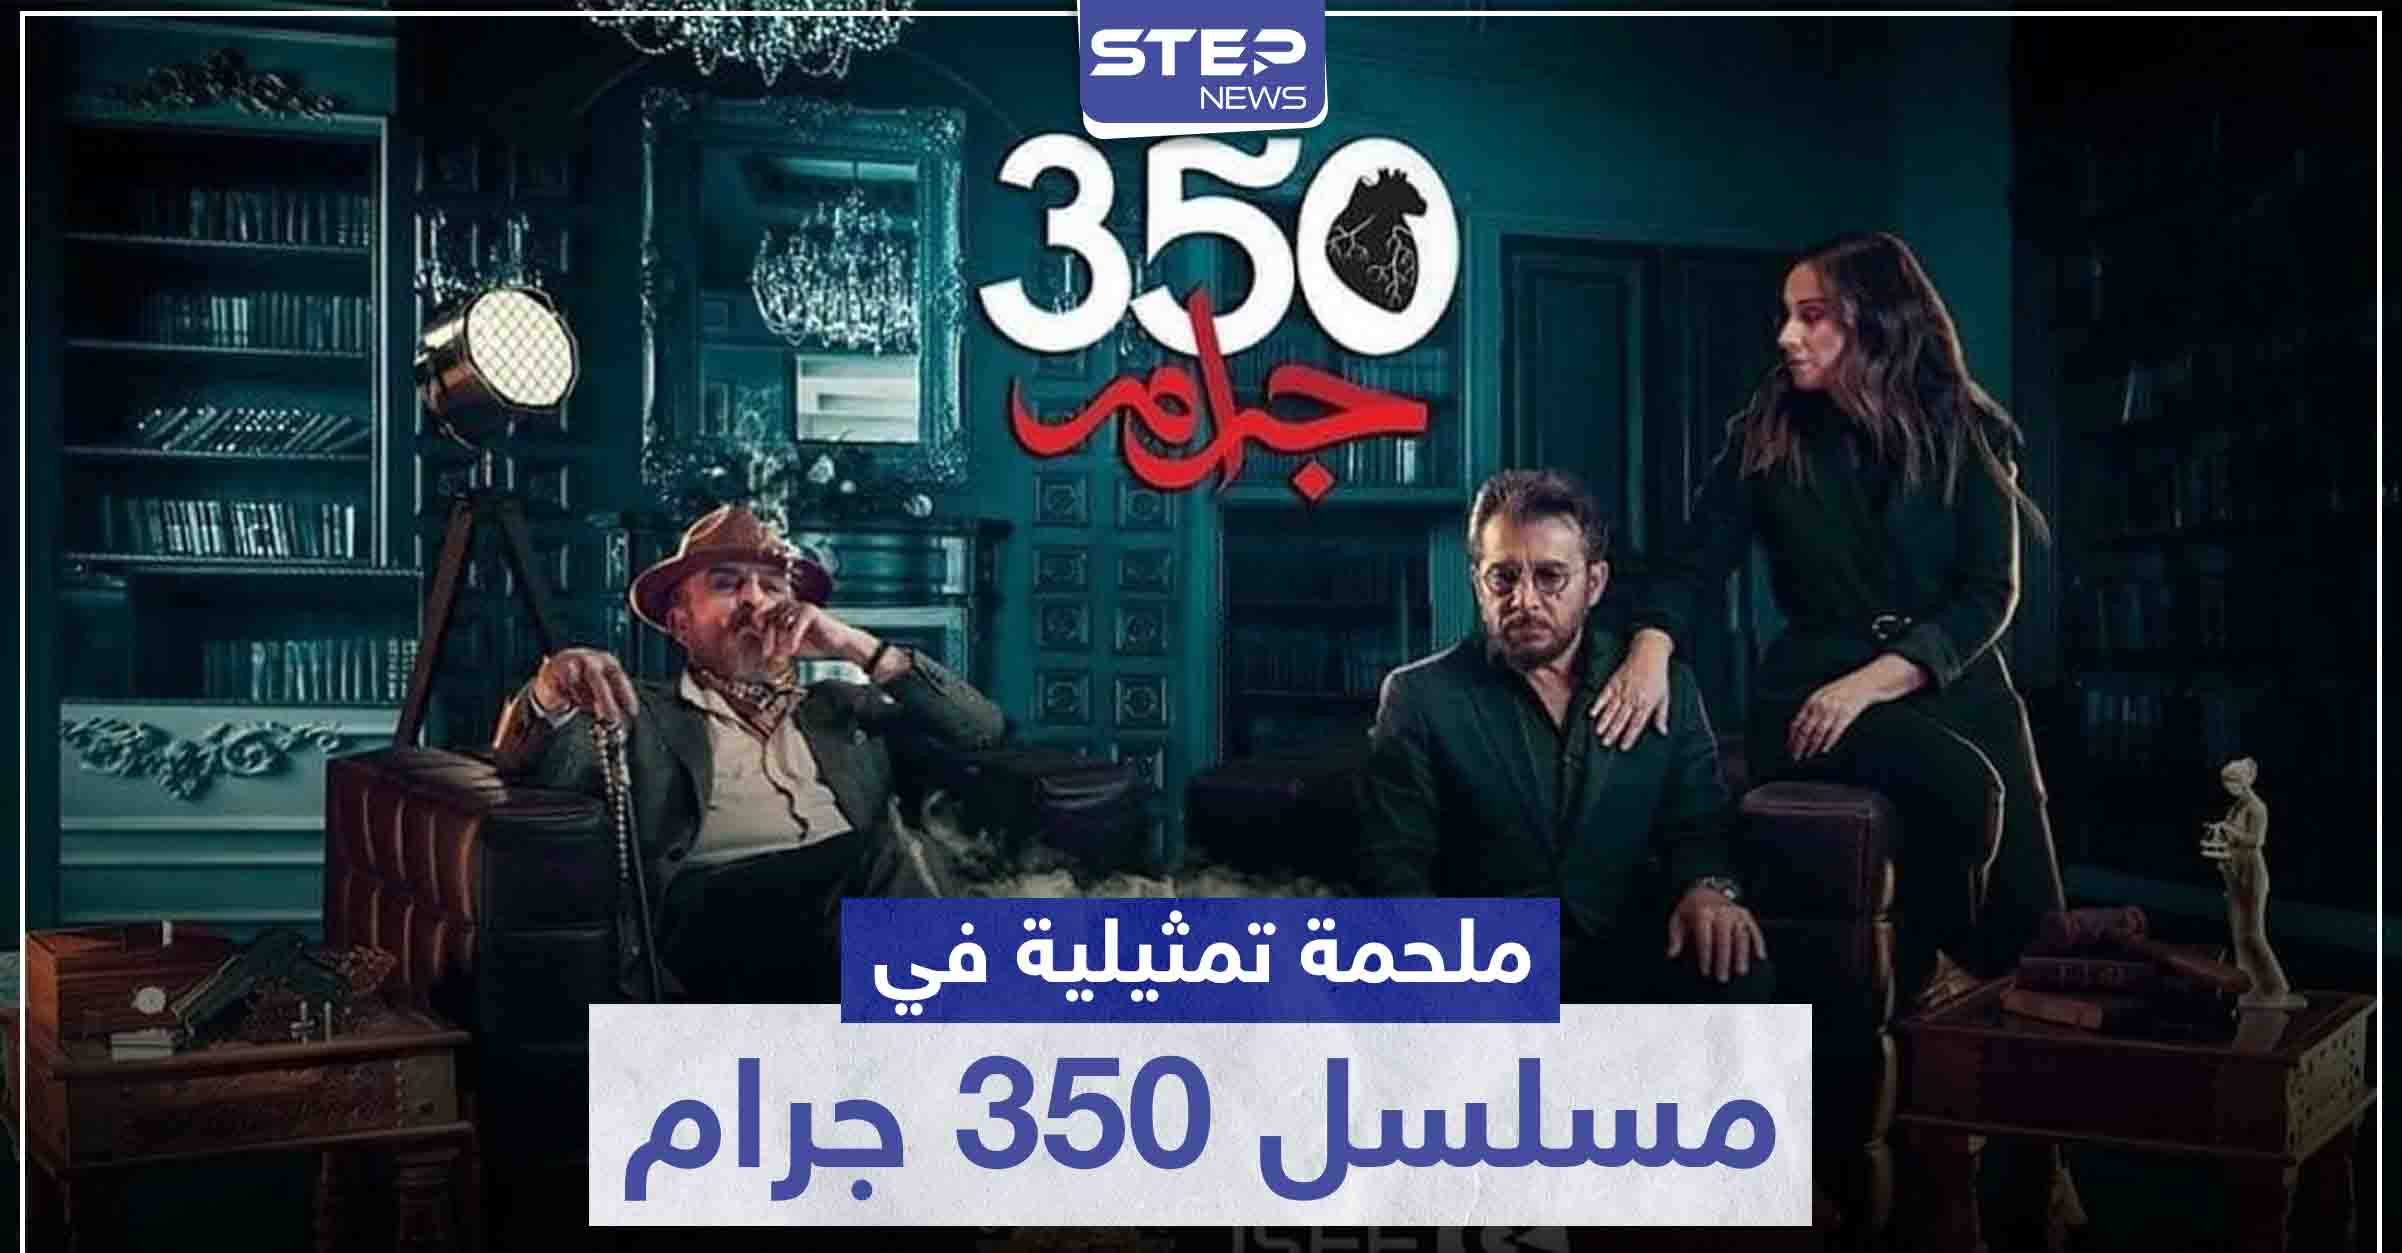 ملحمة تمثيلية بين عابد فهد وسلوم حداد وكارين رزق الله في مسلسل 350 جرام